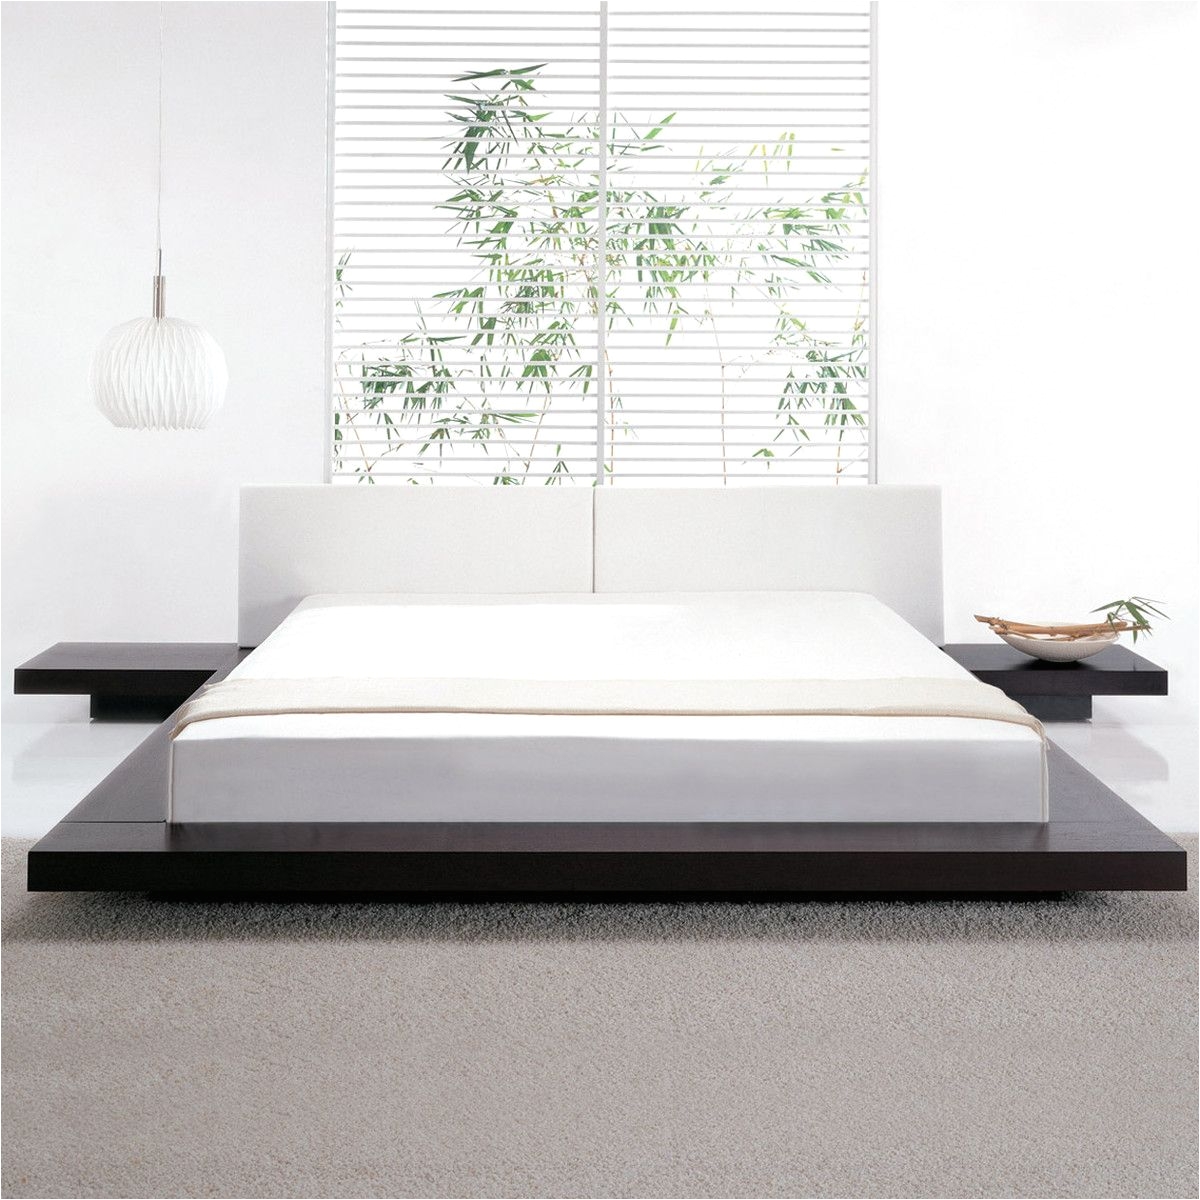 Mattress On the Floor Bed Frame Worth Bed Full Wenge White Home Decor Pinterest Stair Art